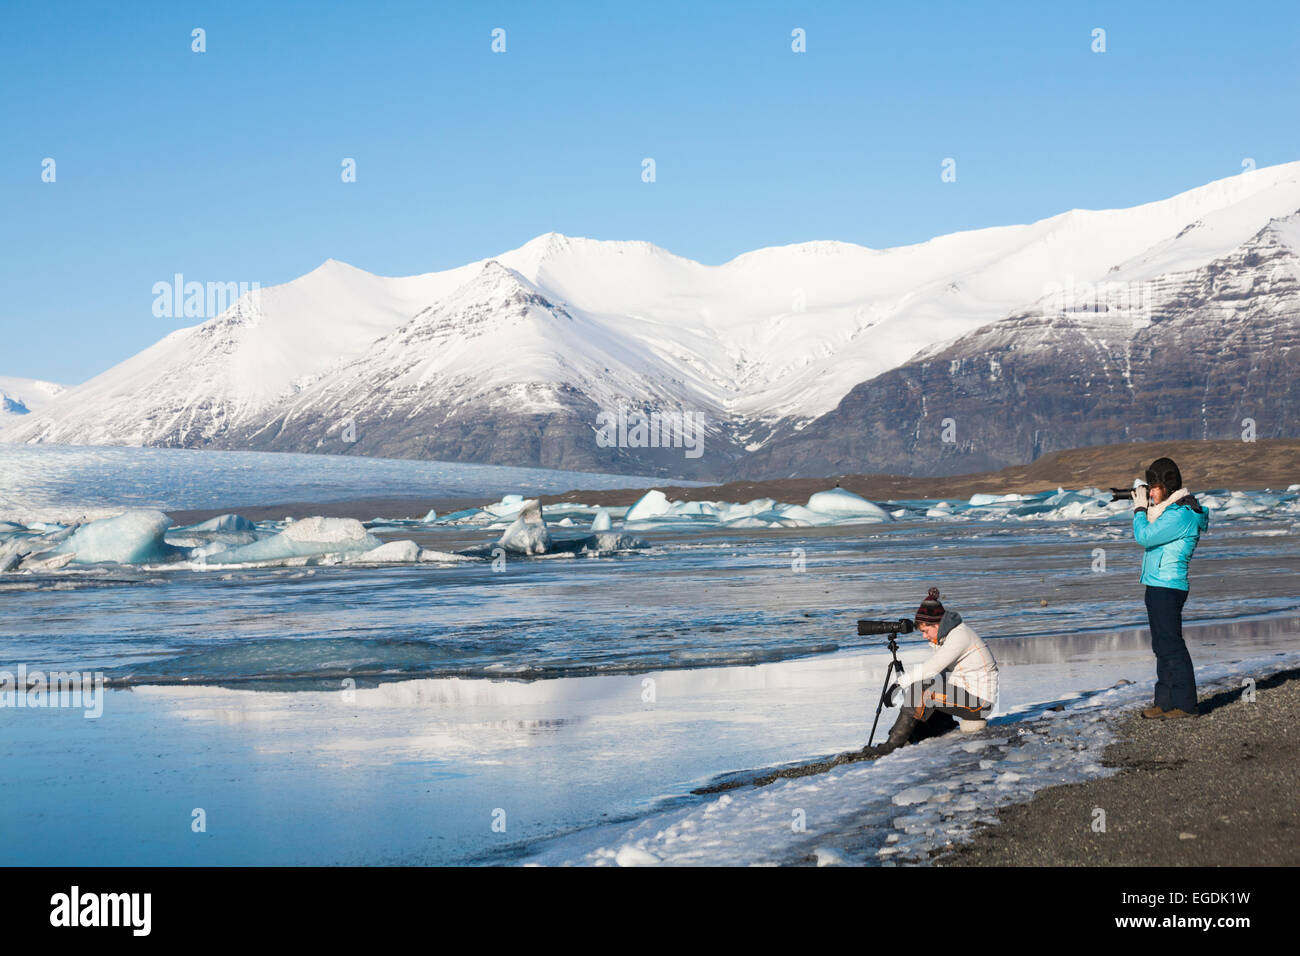 Photographes prenant des photos des paysages époustouflants de la lagune Glaciaire de Jokulsarlon, au bord du parc national de Vatnajokull, Islande, en février Banque D'Images